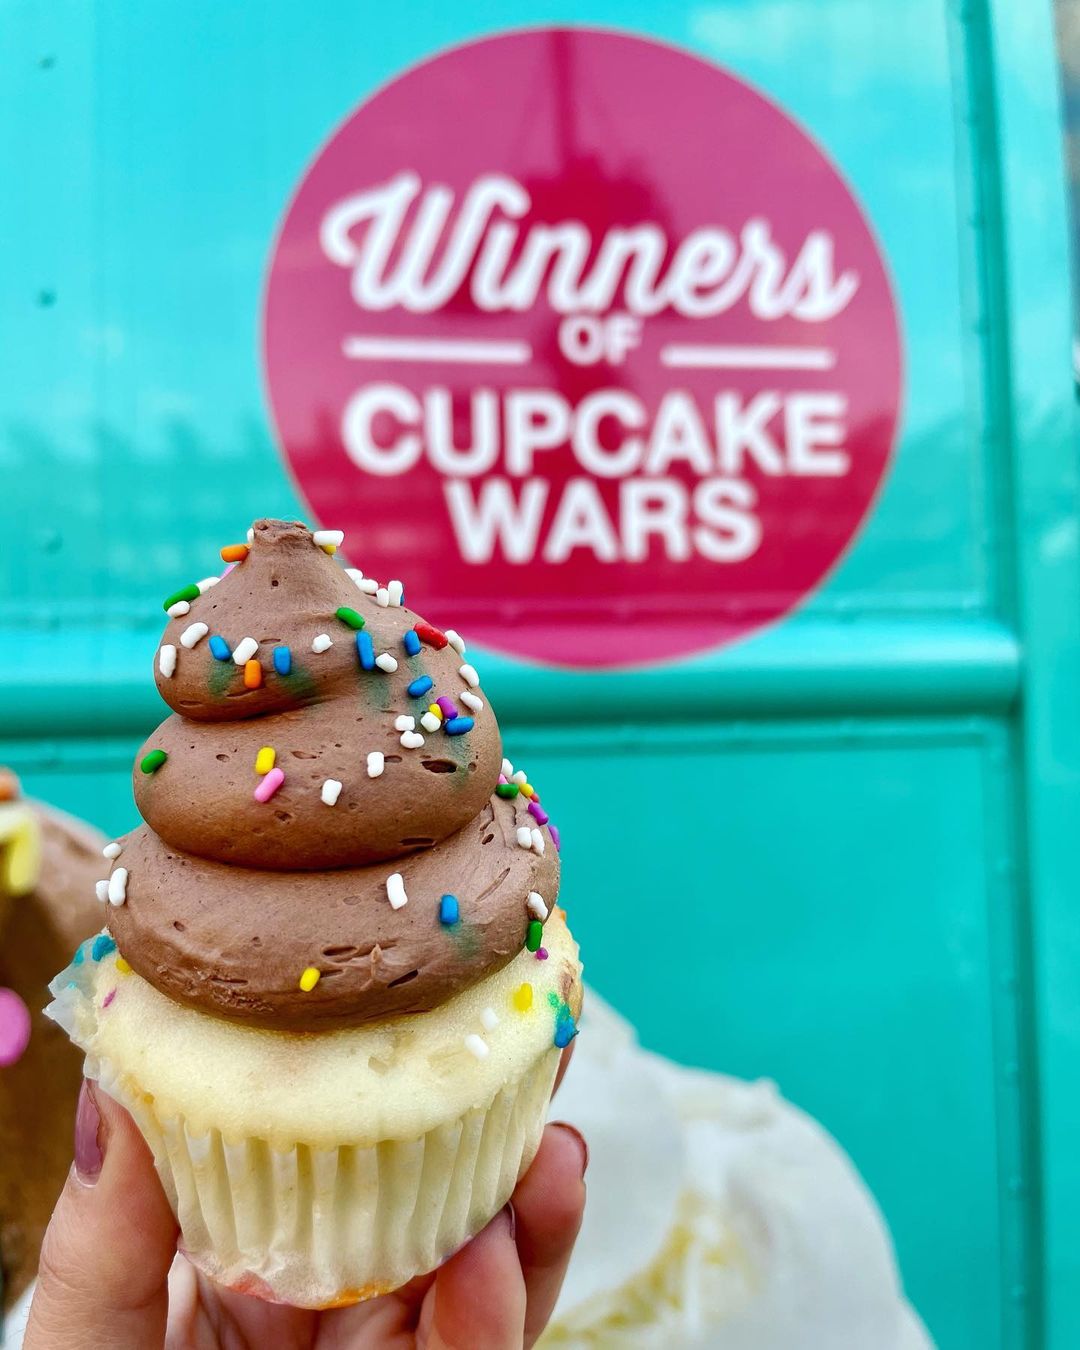 House of Cupcakes Food Truck Cupcake Wars Winners